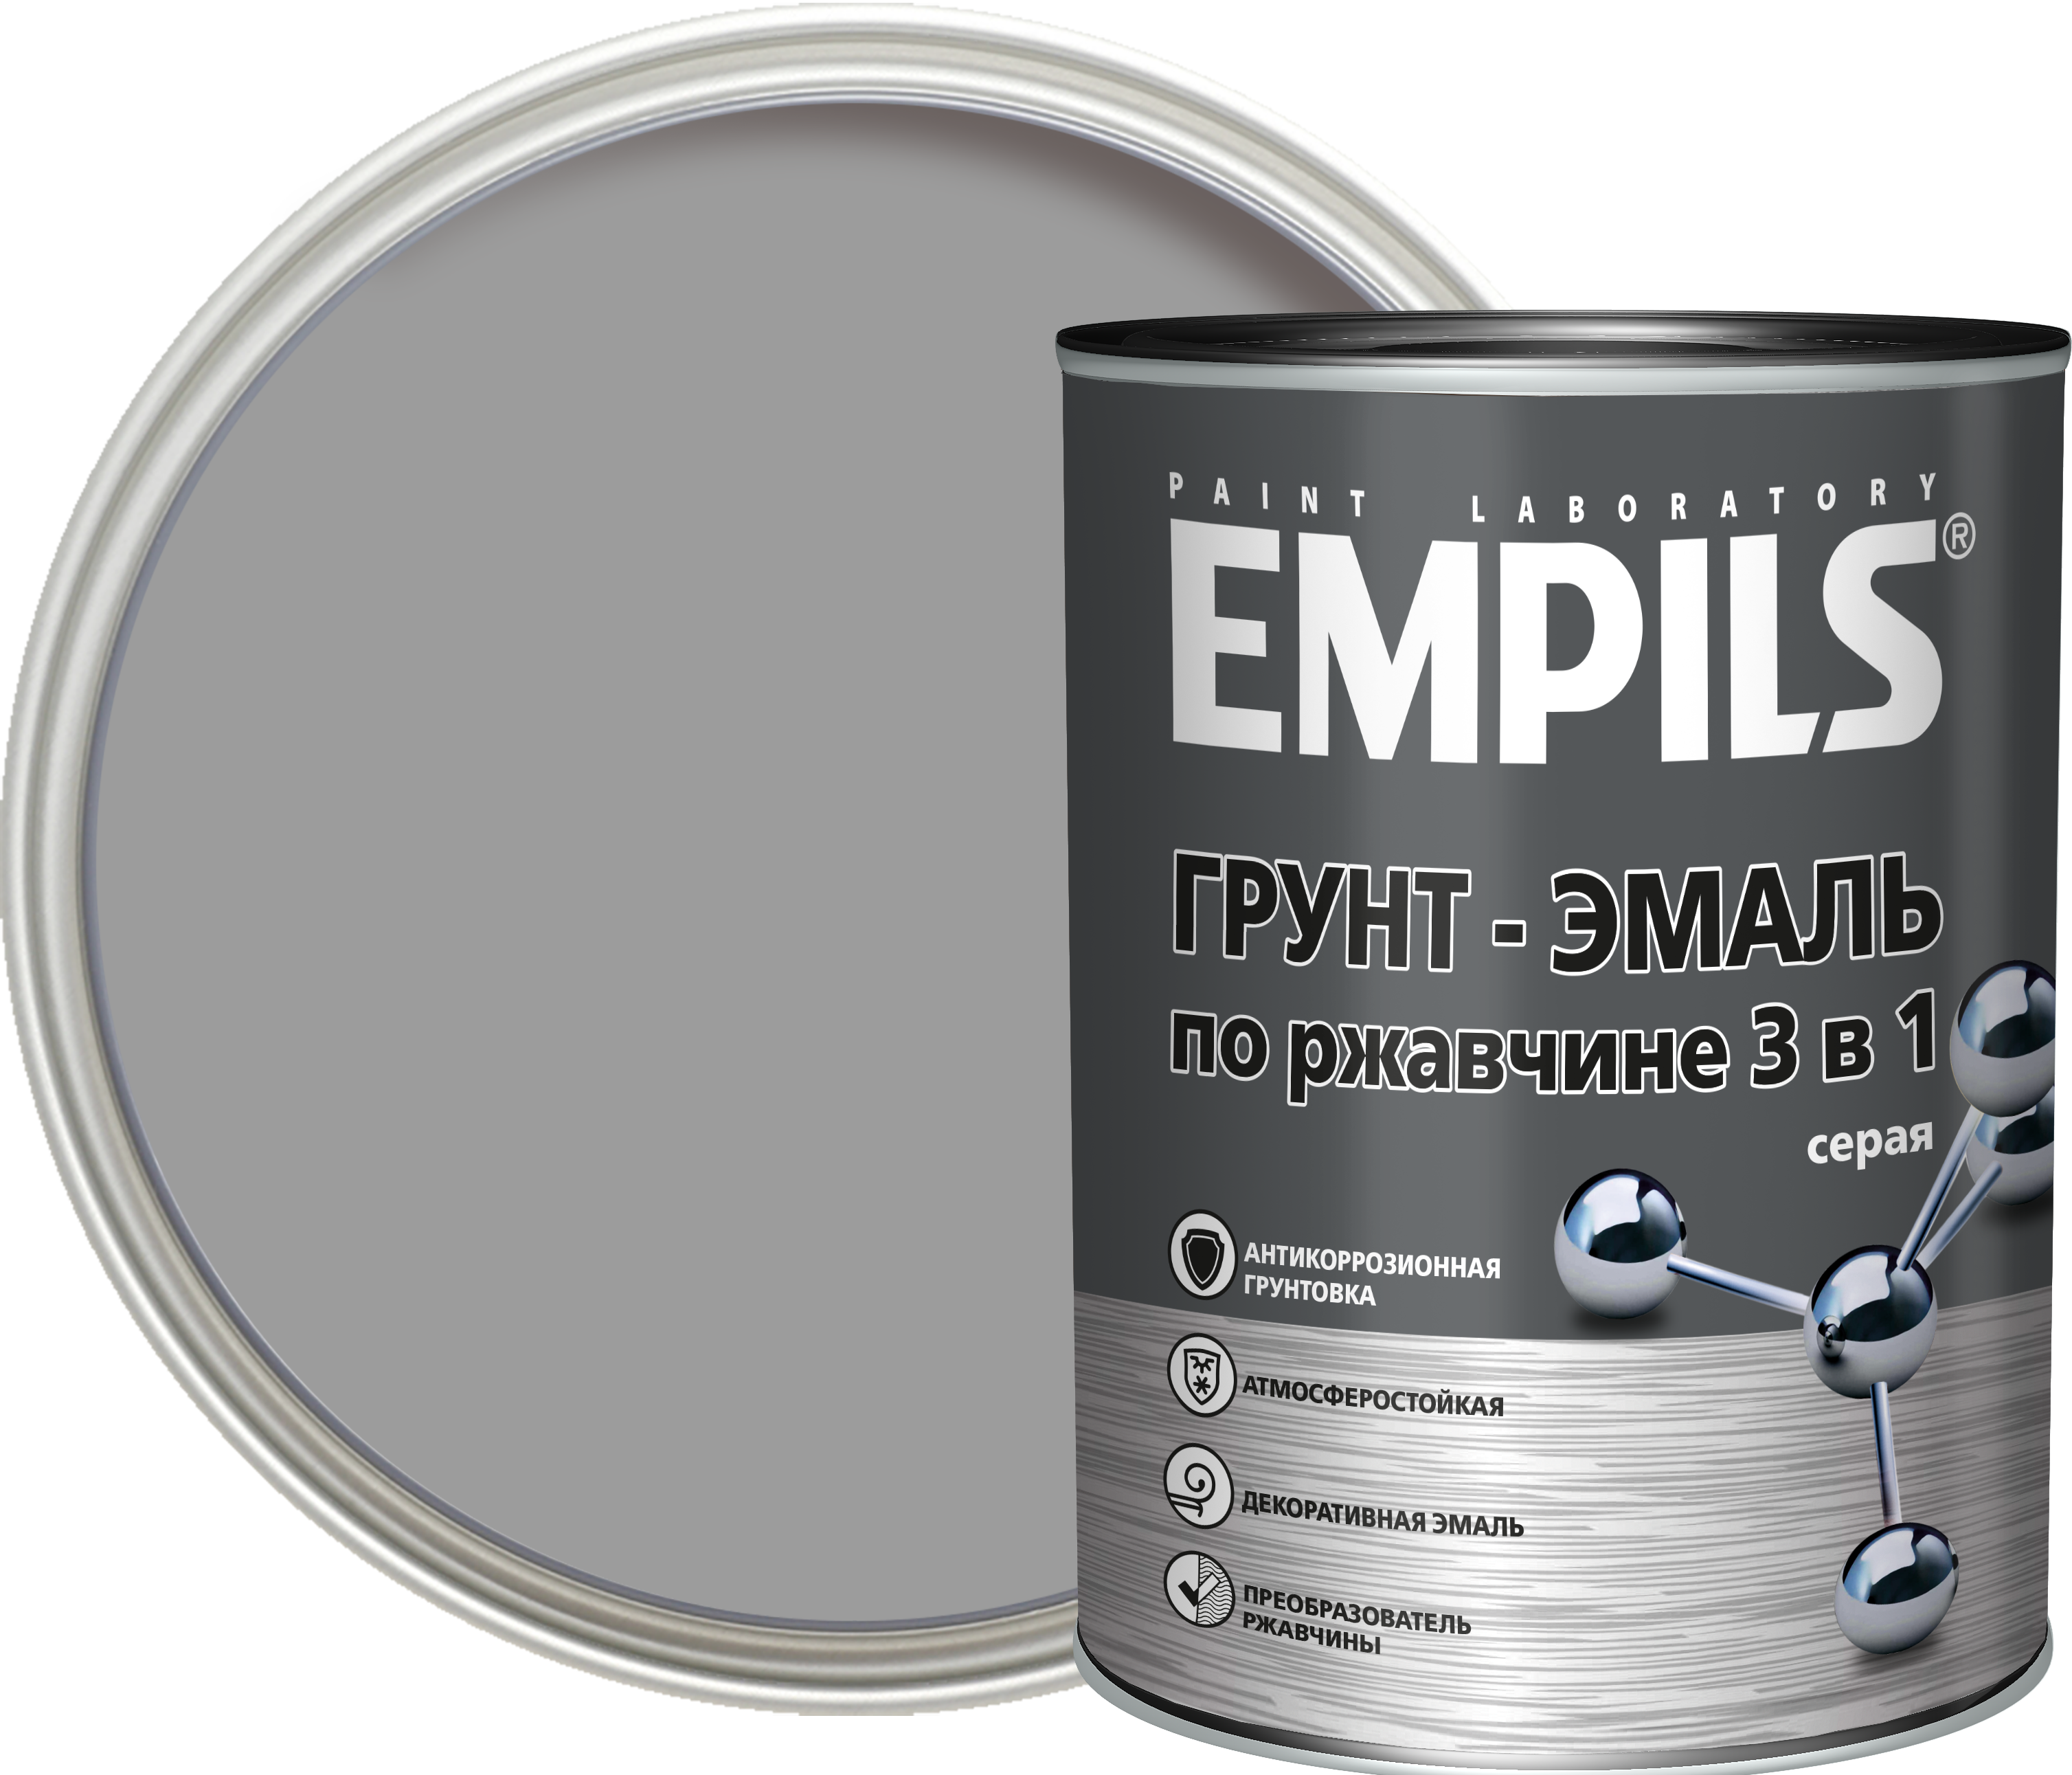 Empils грунт эмаль по ржавчине